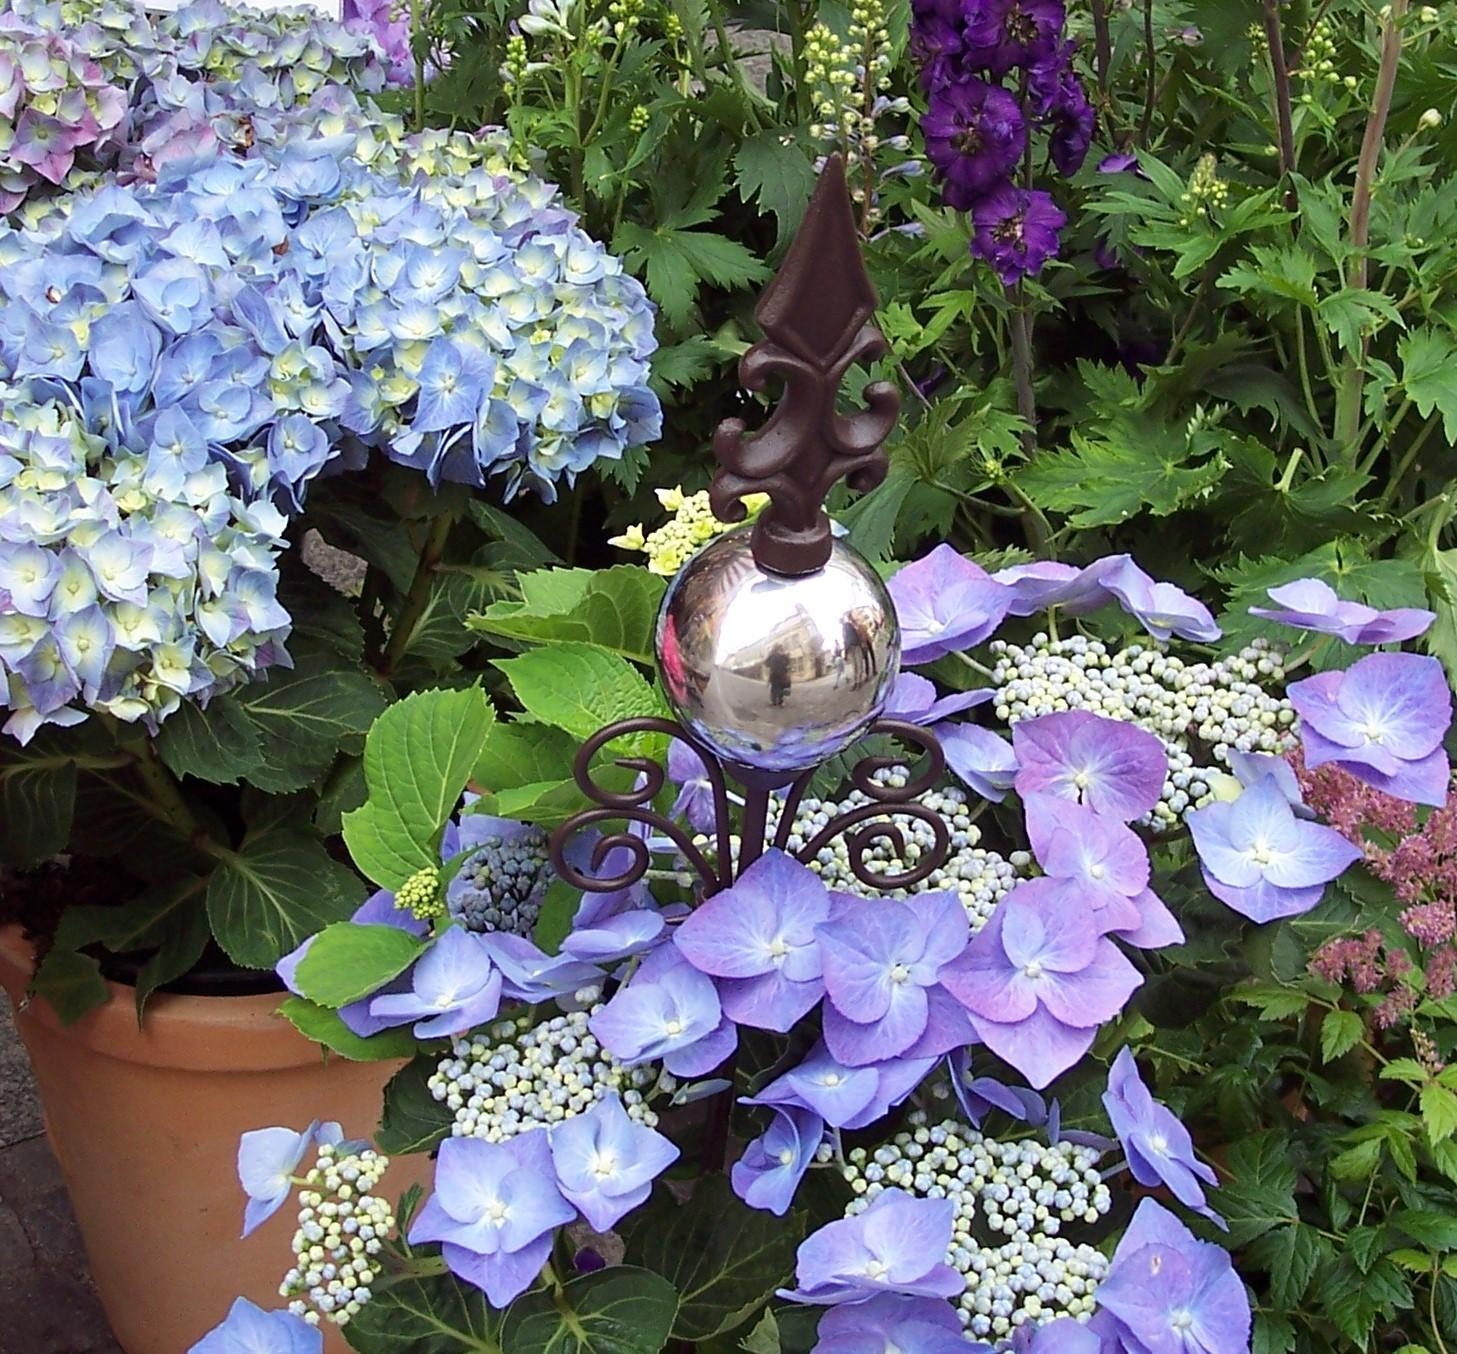 #hortensienwoche 
Leider blühen meine Hortensien noch nicht so schön, deshalb ein Foto aus dem Blumenladen.